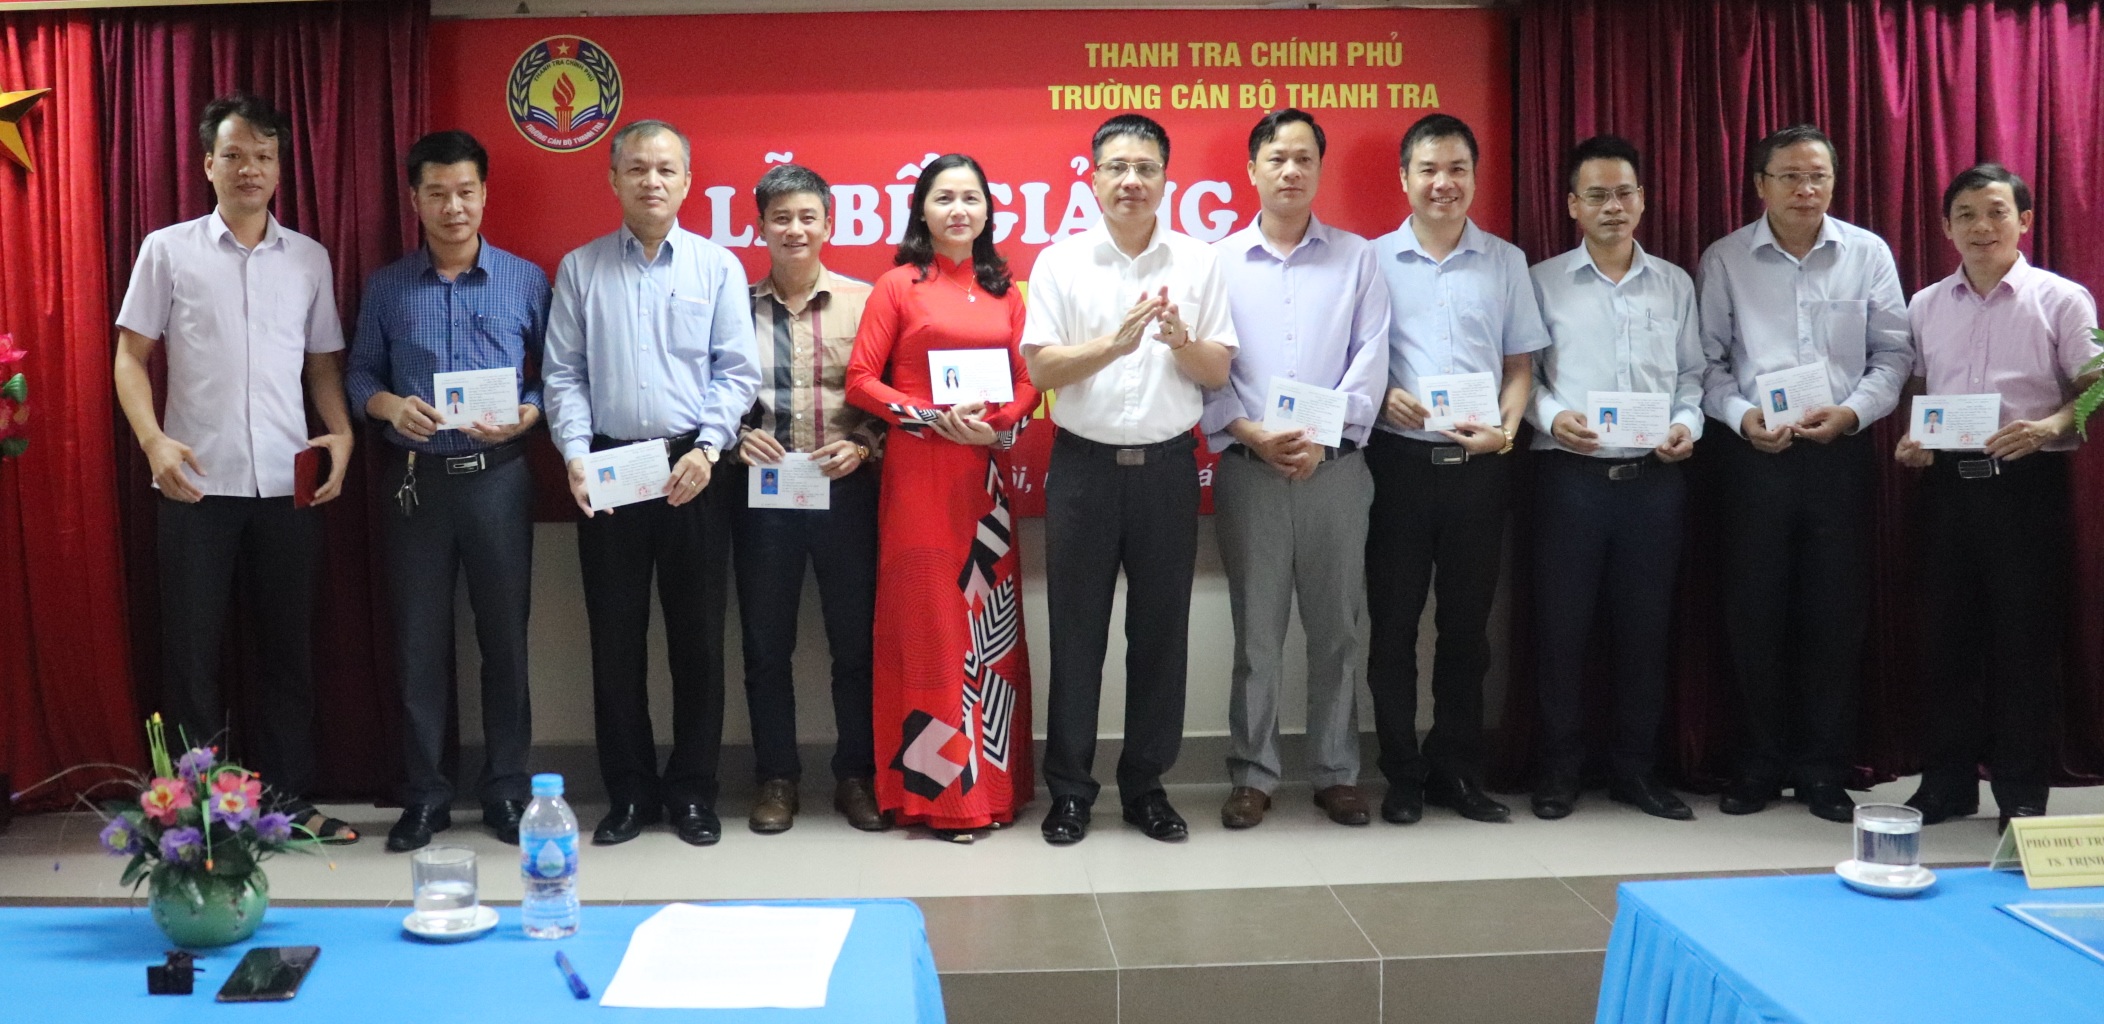 TS Trịnh Văn Toàn PHT nhà trg trao chứng chỉ cho học viên